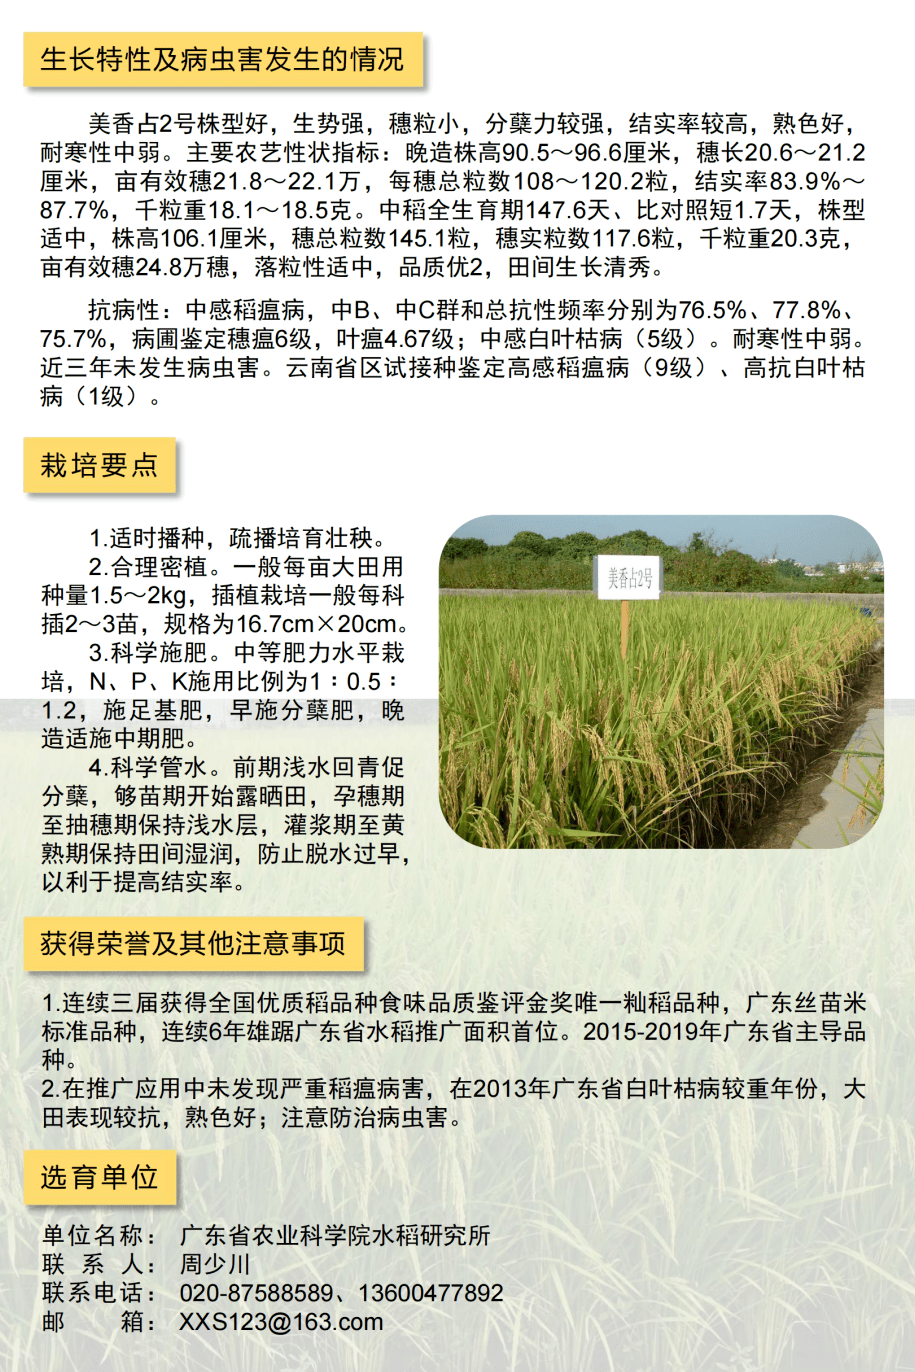 详解一起来看2021年广东省农业主导品种水稻篇